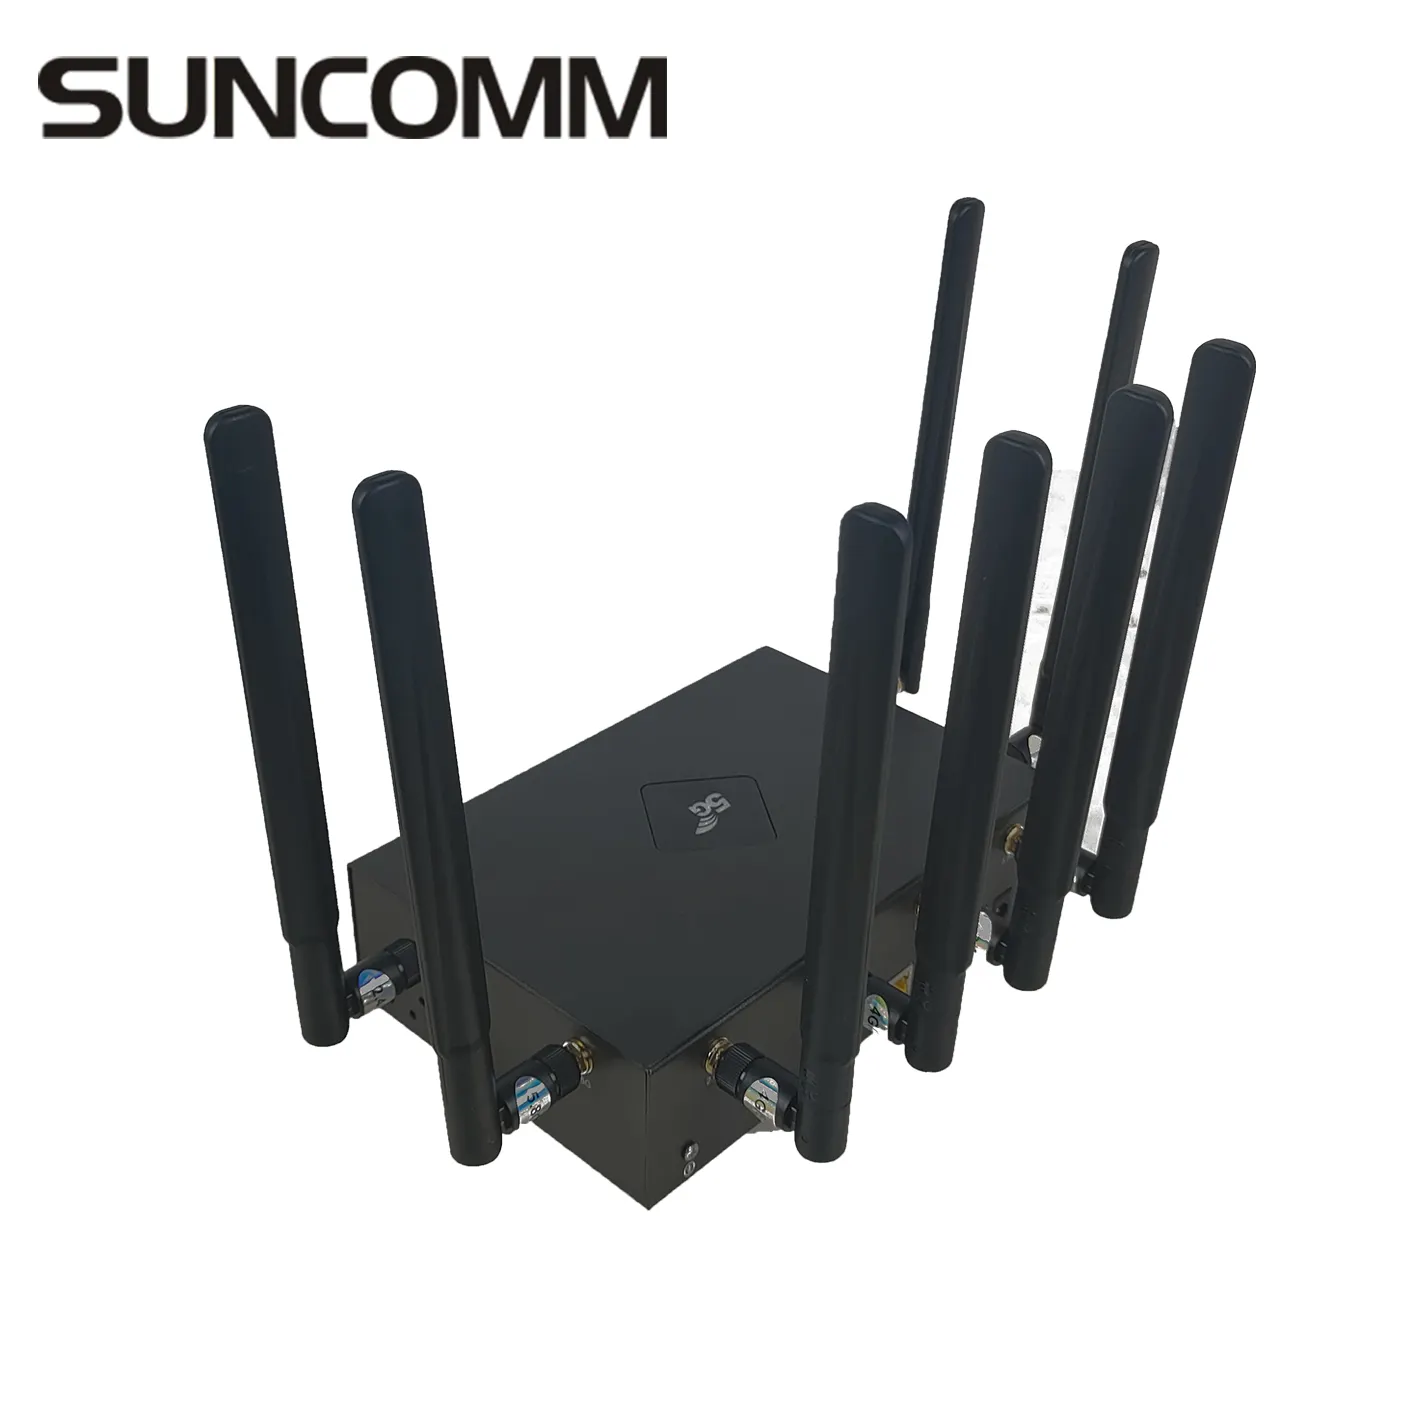 Réseau haute vitesse SUNCOMM O1 4G 5G routeur sans fil WiFi 6 1800Mbps 5g routeur avec emplacement pour carte sim